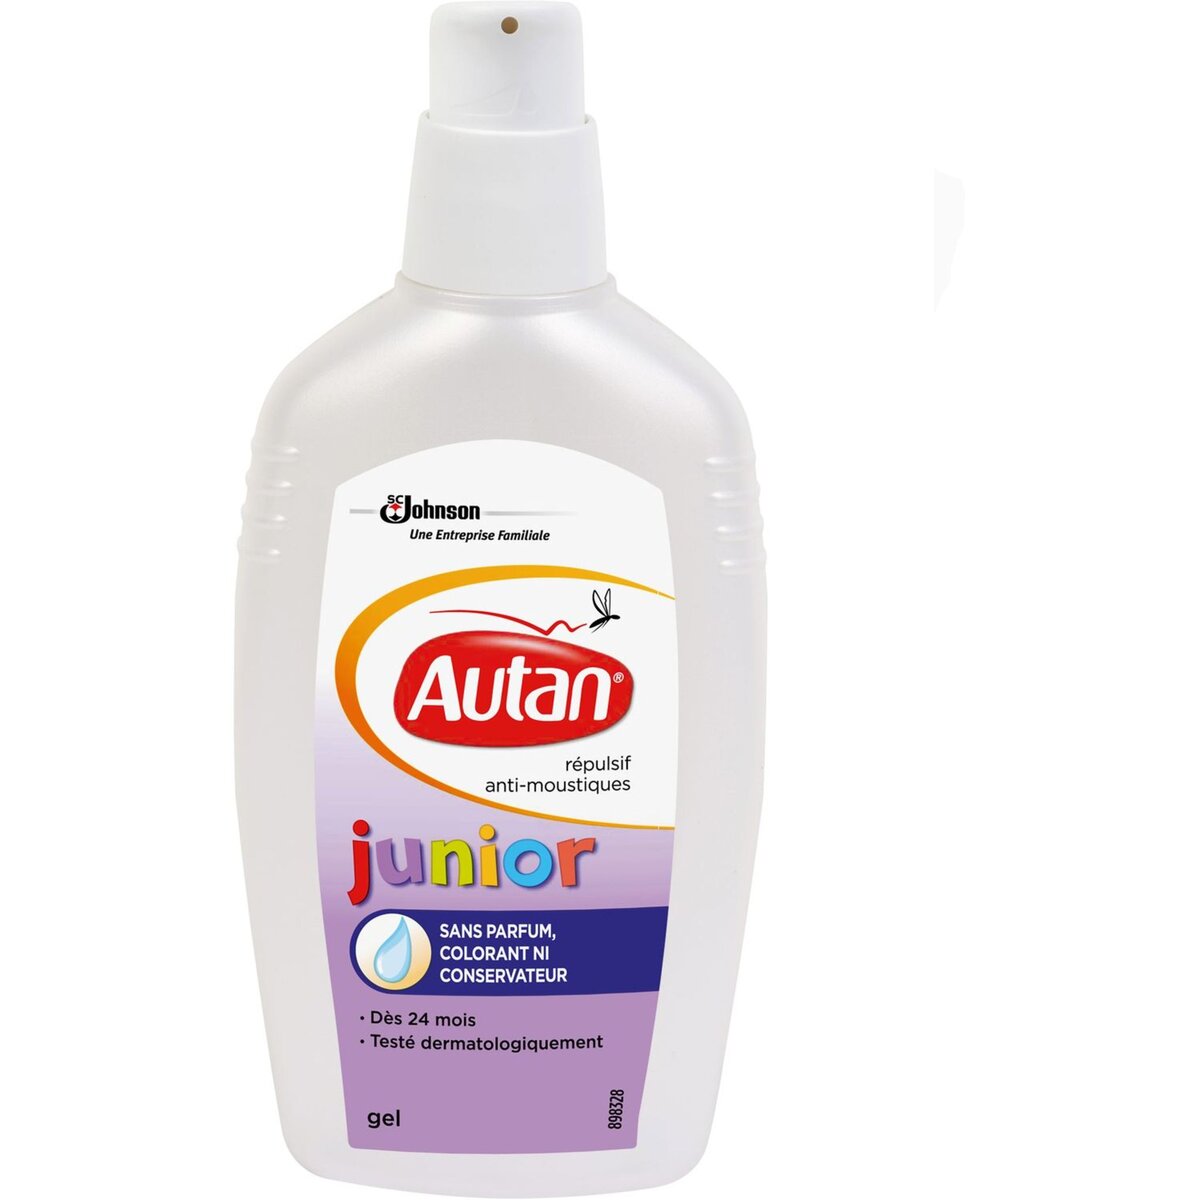 Autan Defense+ Répulsif Anti-Moustiques Sensitive 100ml